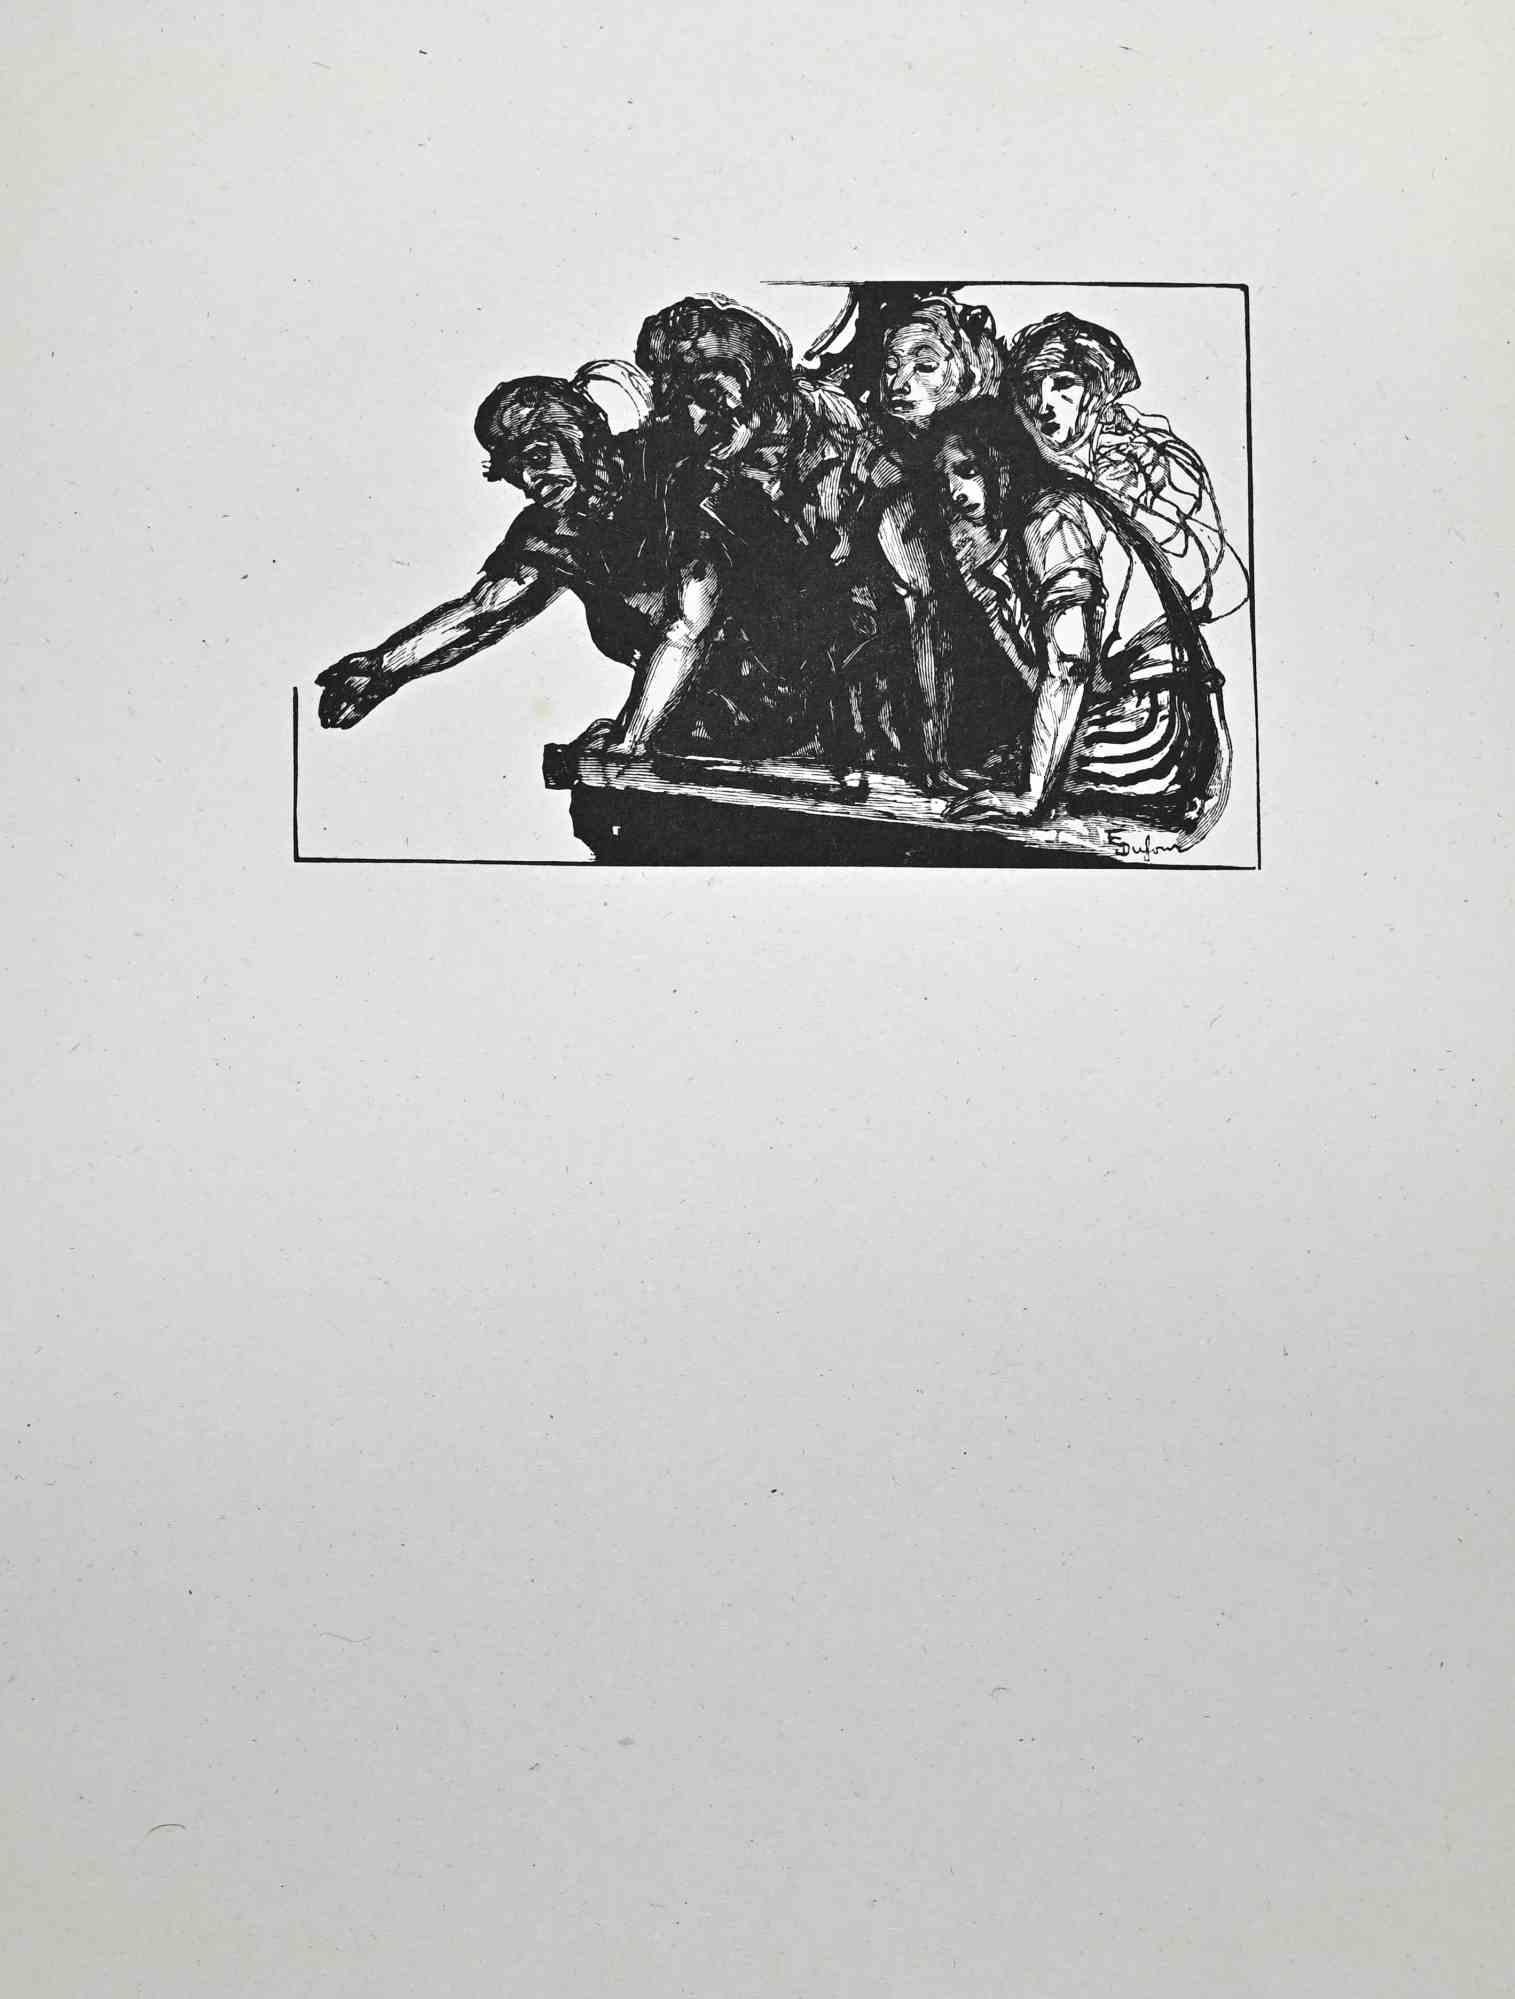 Der Protest ist ein Holzschnitt auf elfenbeinfarbenem Papier, der von Paul Baudier (1881-1962) in den 1930er Jahren realisiert wurde.

Gute Bedingungen.

Paul Baudier, (geboren am 18. Oktober 1881 in Paris und gestorben am 9. Dezember 1962 in